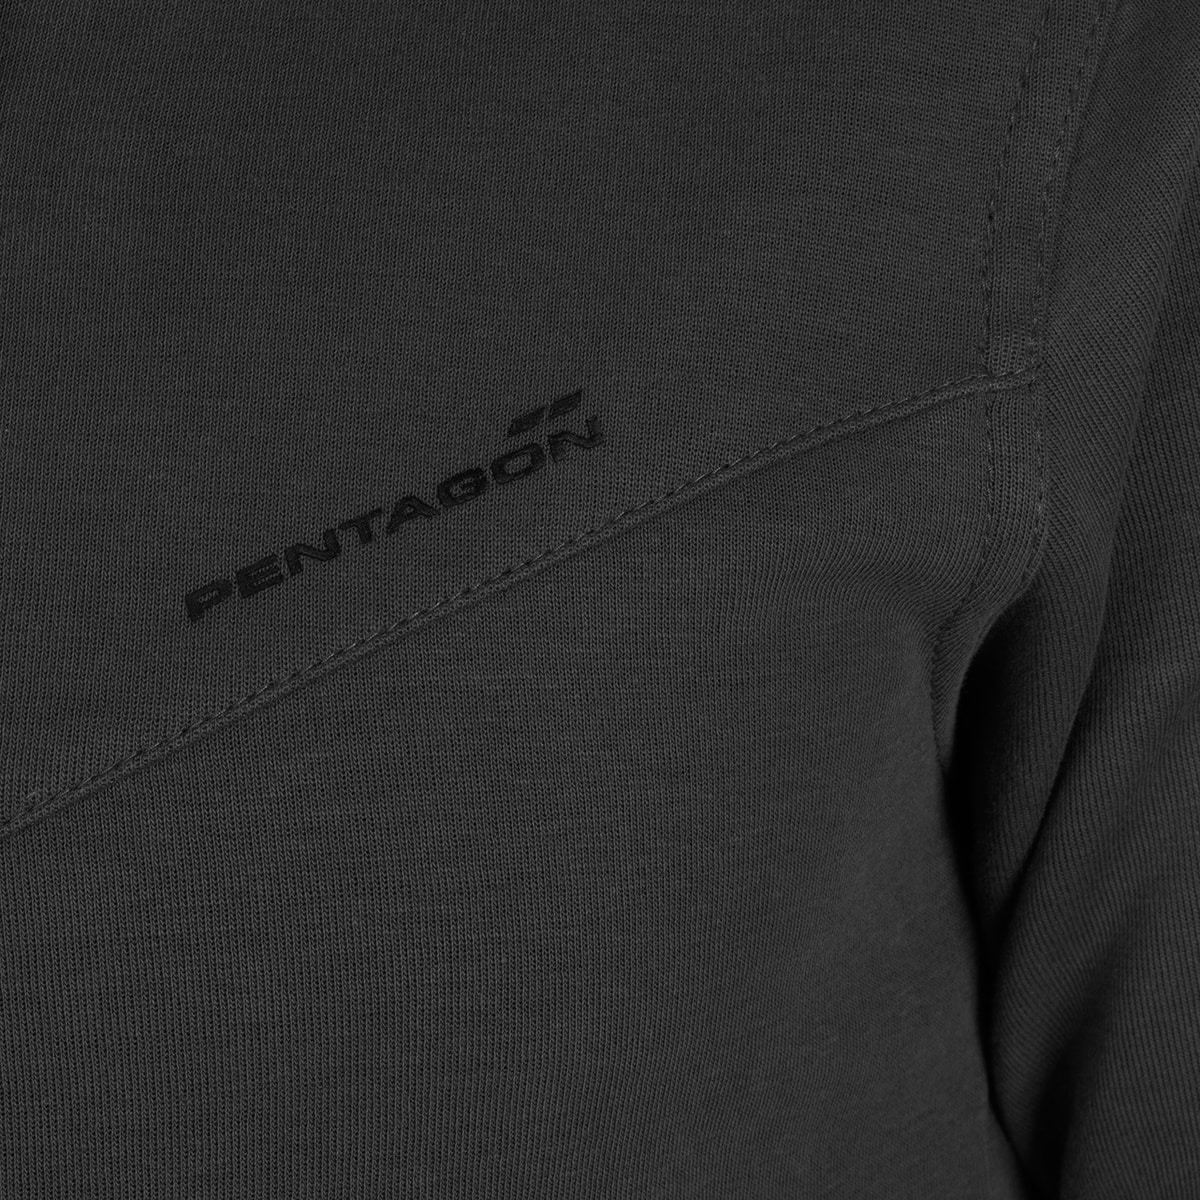 Bluza Pentagon Pentathlon 2.0 - Black